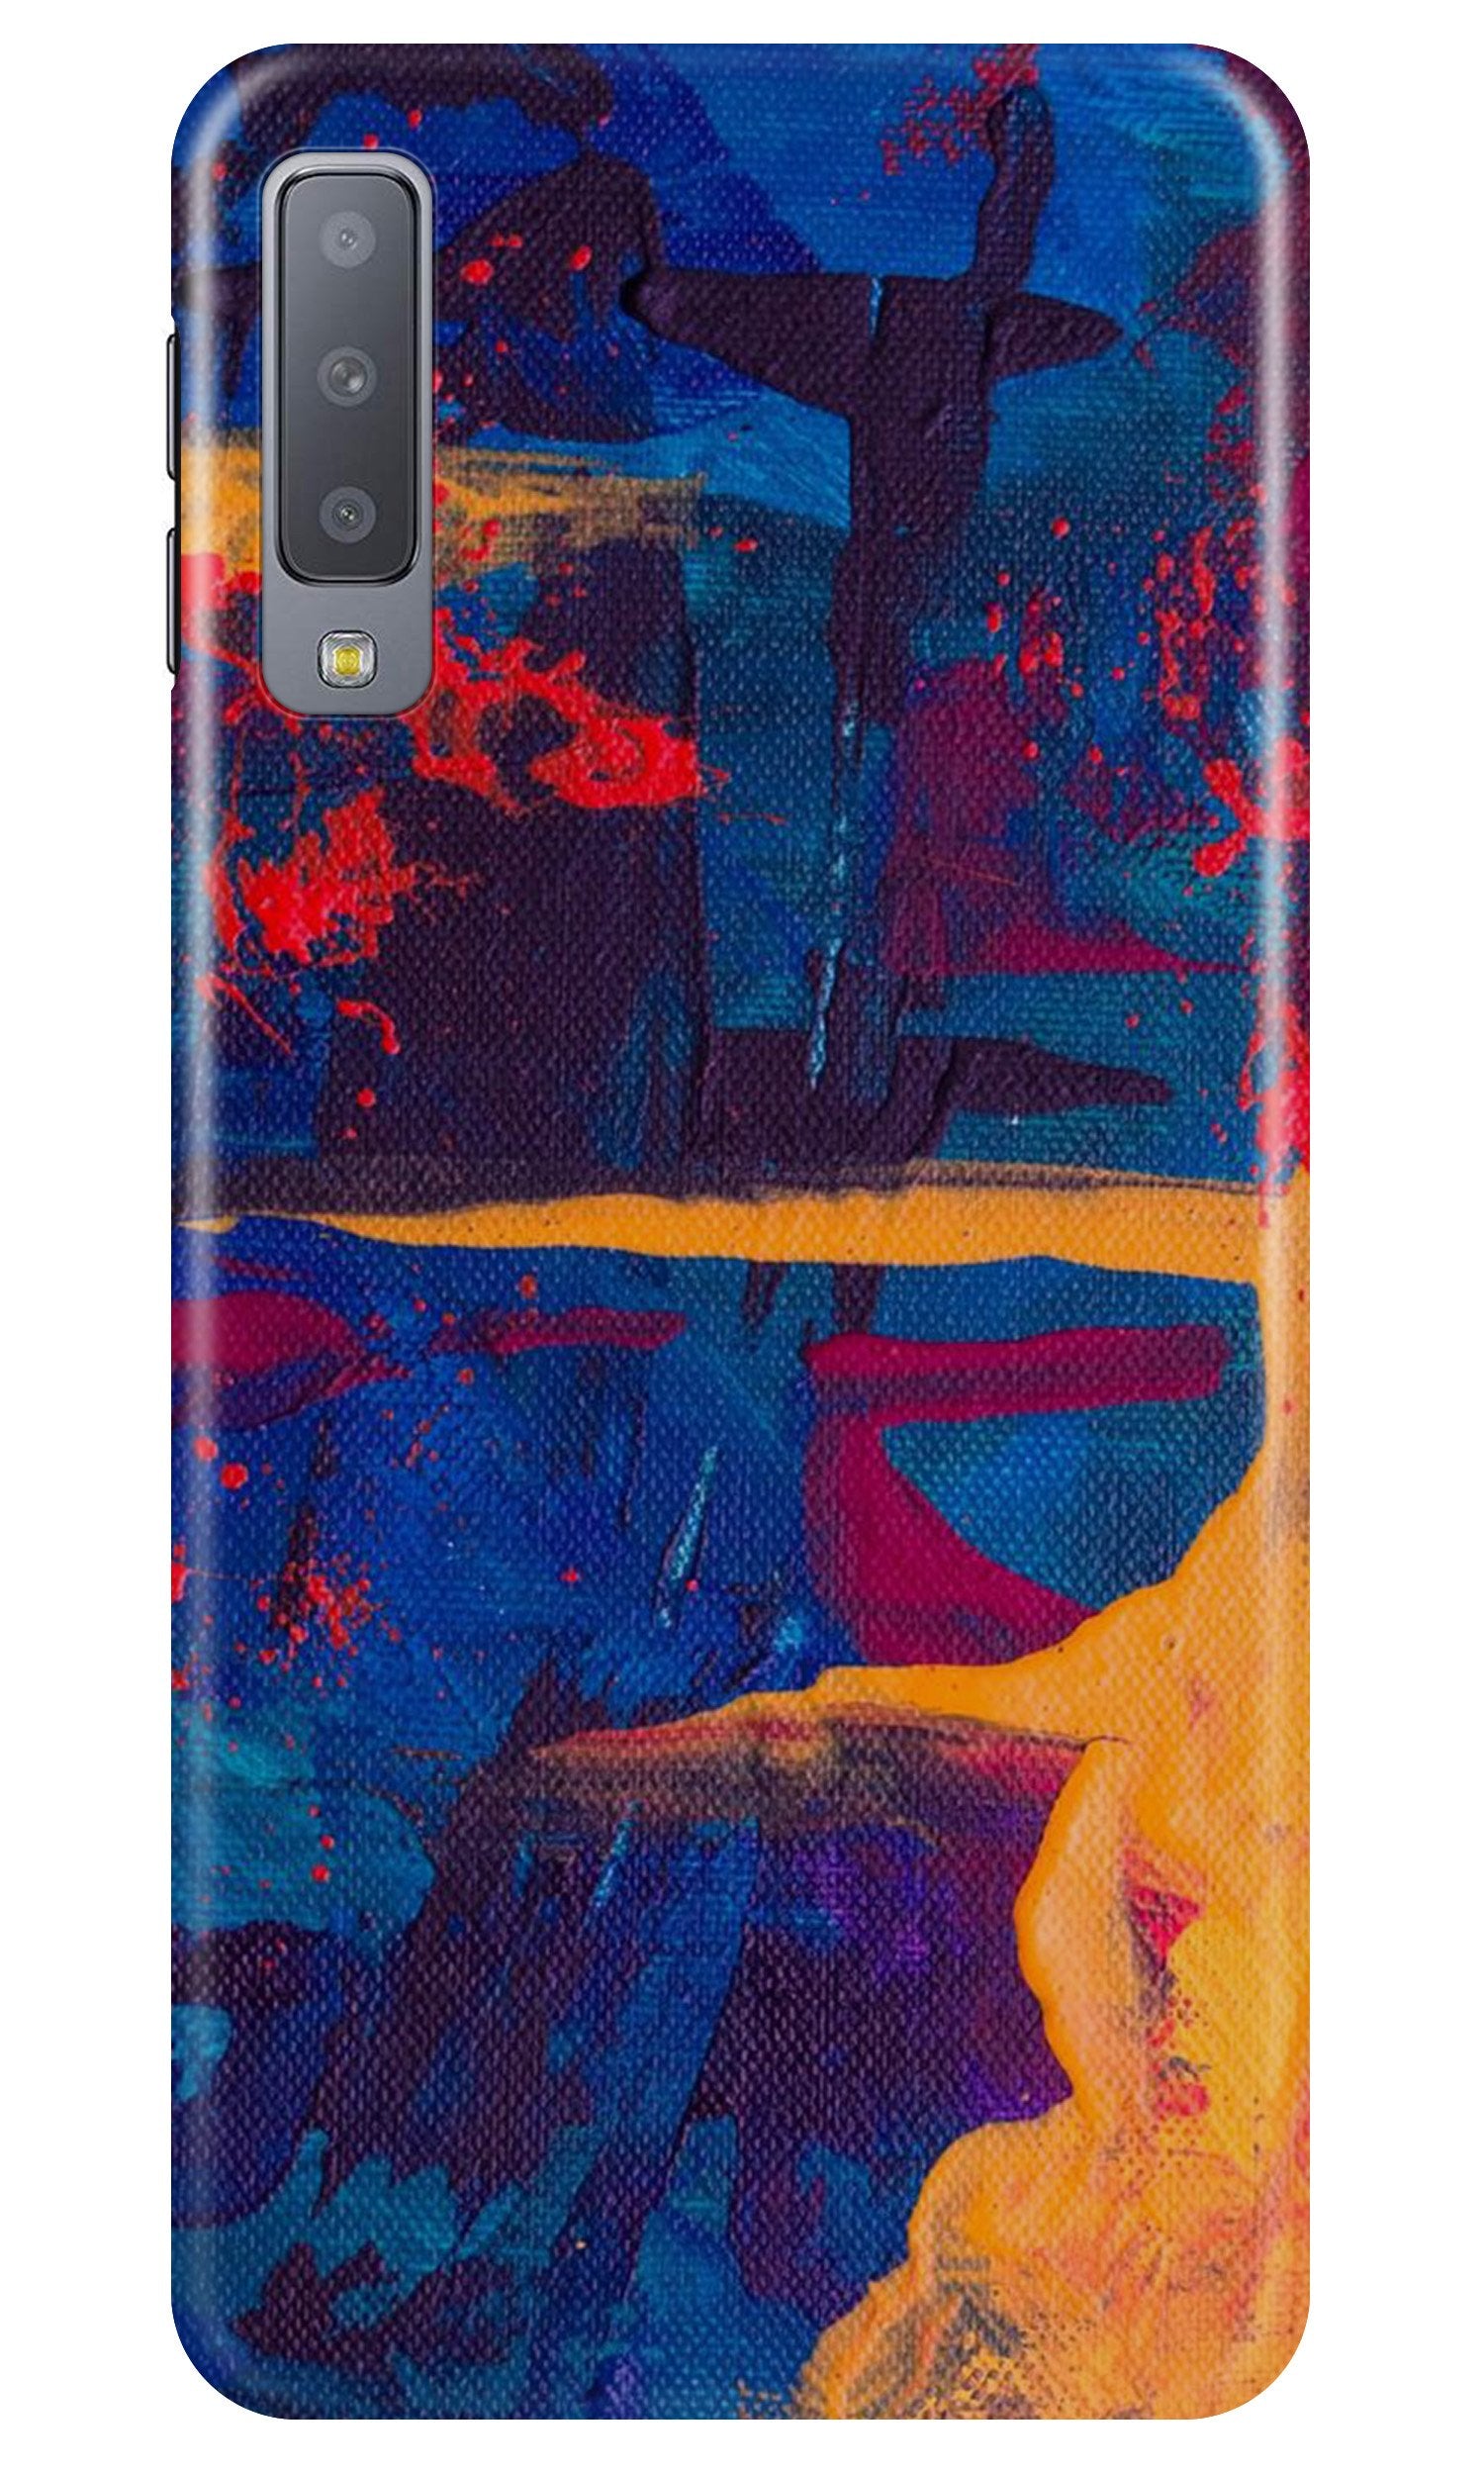 Modern Art Case for Samung Galaxy A70s (Design No. 238)